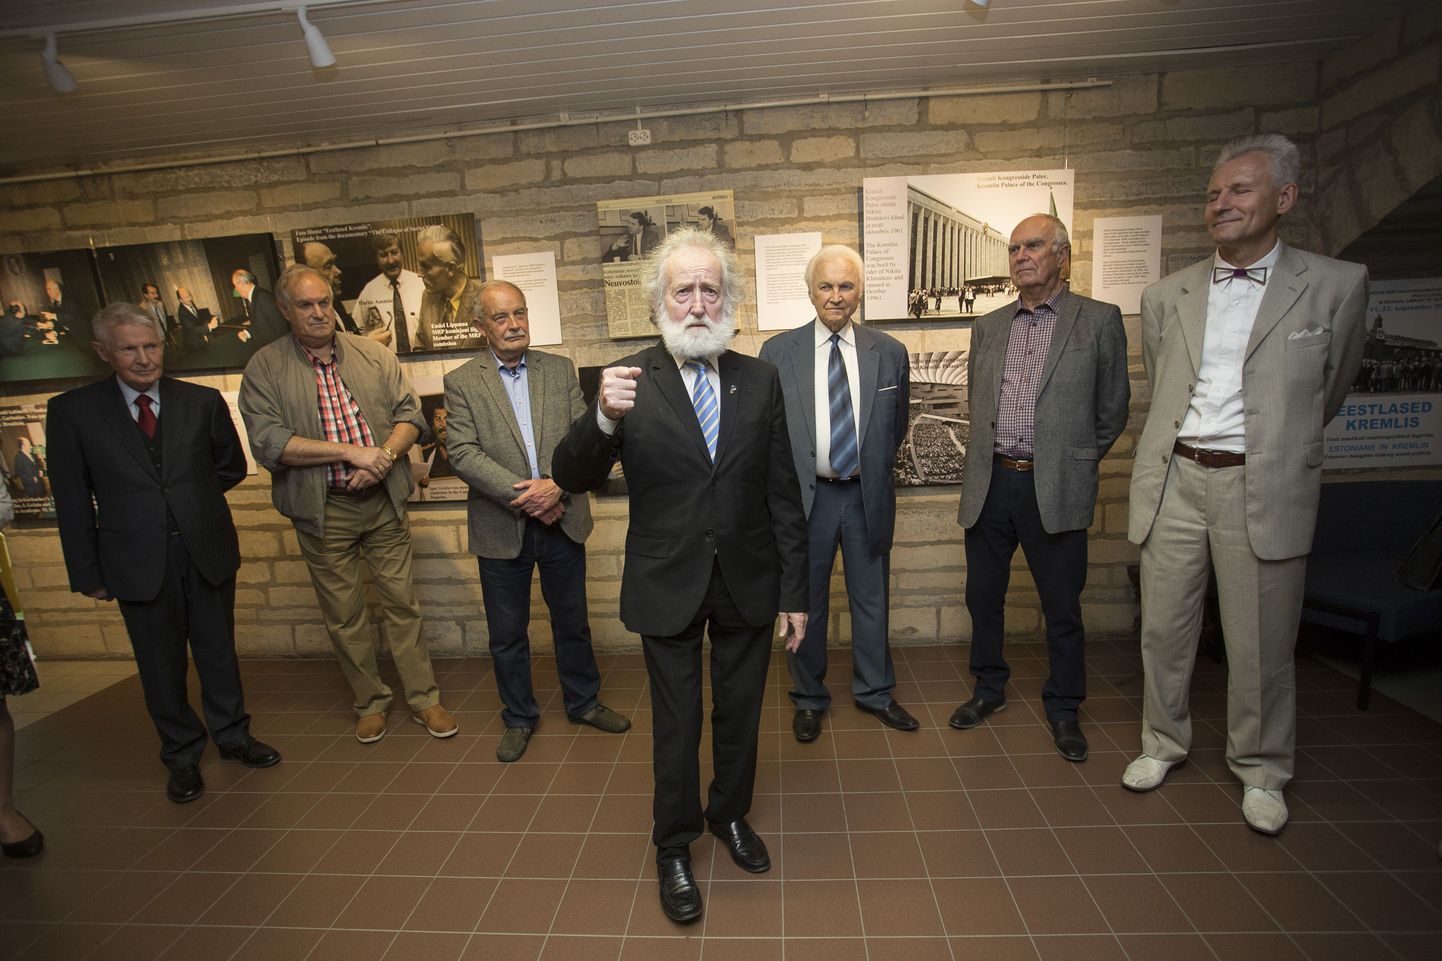 Professor Ülo Vooglaid meenutab värvikaid seiku ja pinevaid aegu. Tema selja taga seisavad Jüri Kraft, Tiit Made, Arnold Rüütel, Indrek Toome ja Ivar Raig.